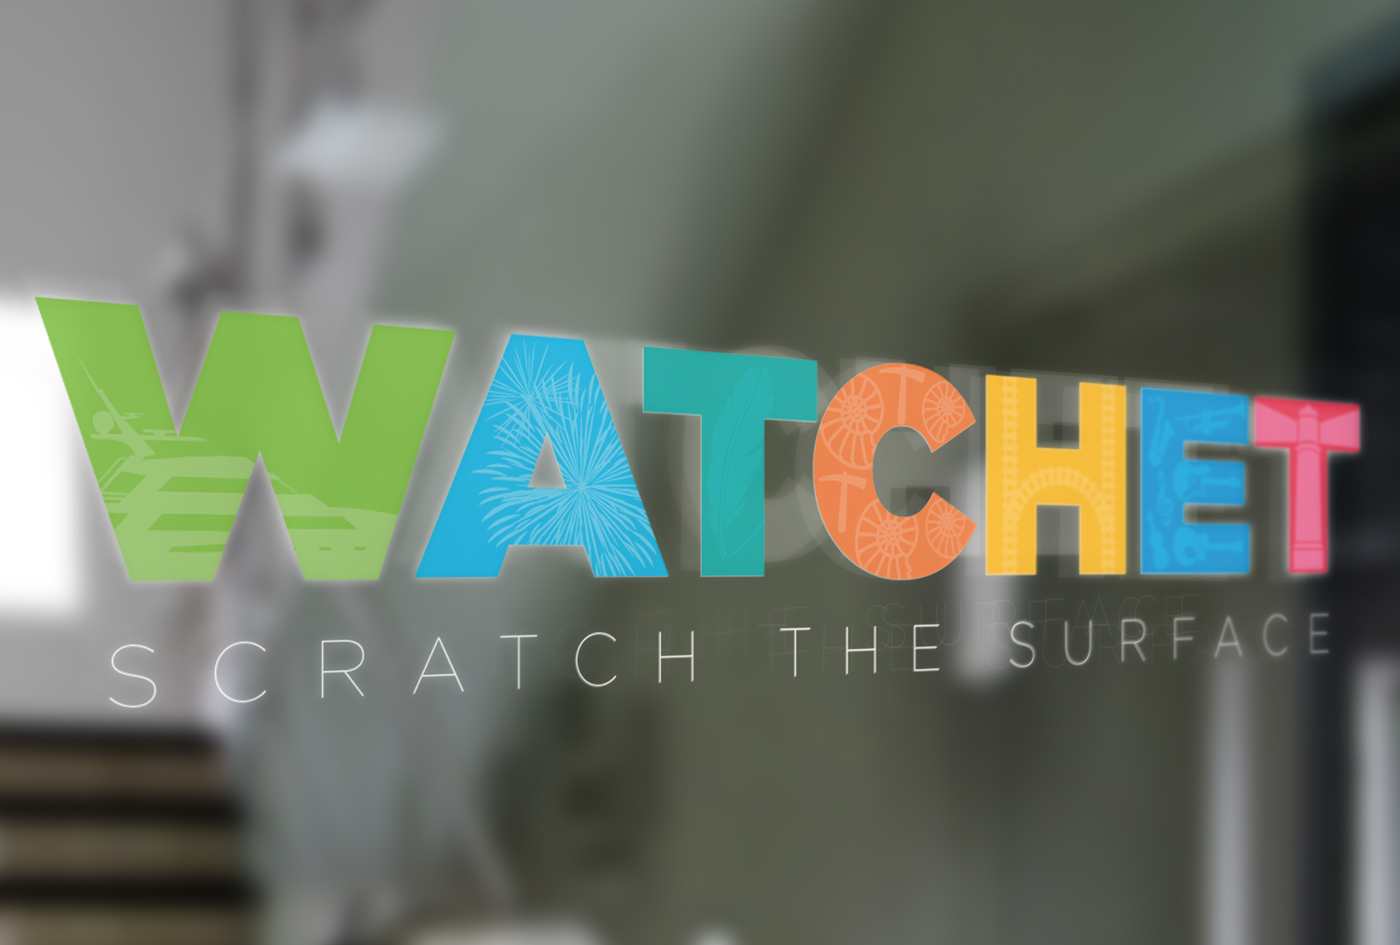 Watchet - Scratch The Surface